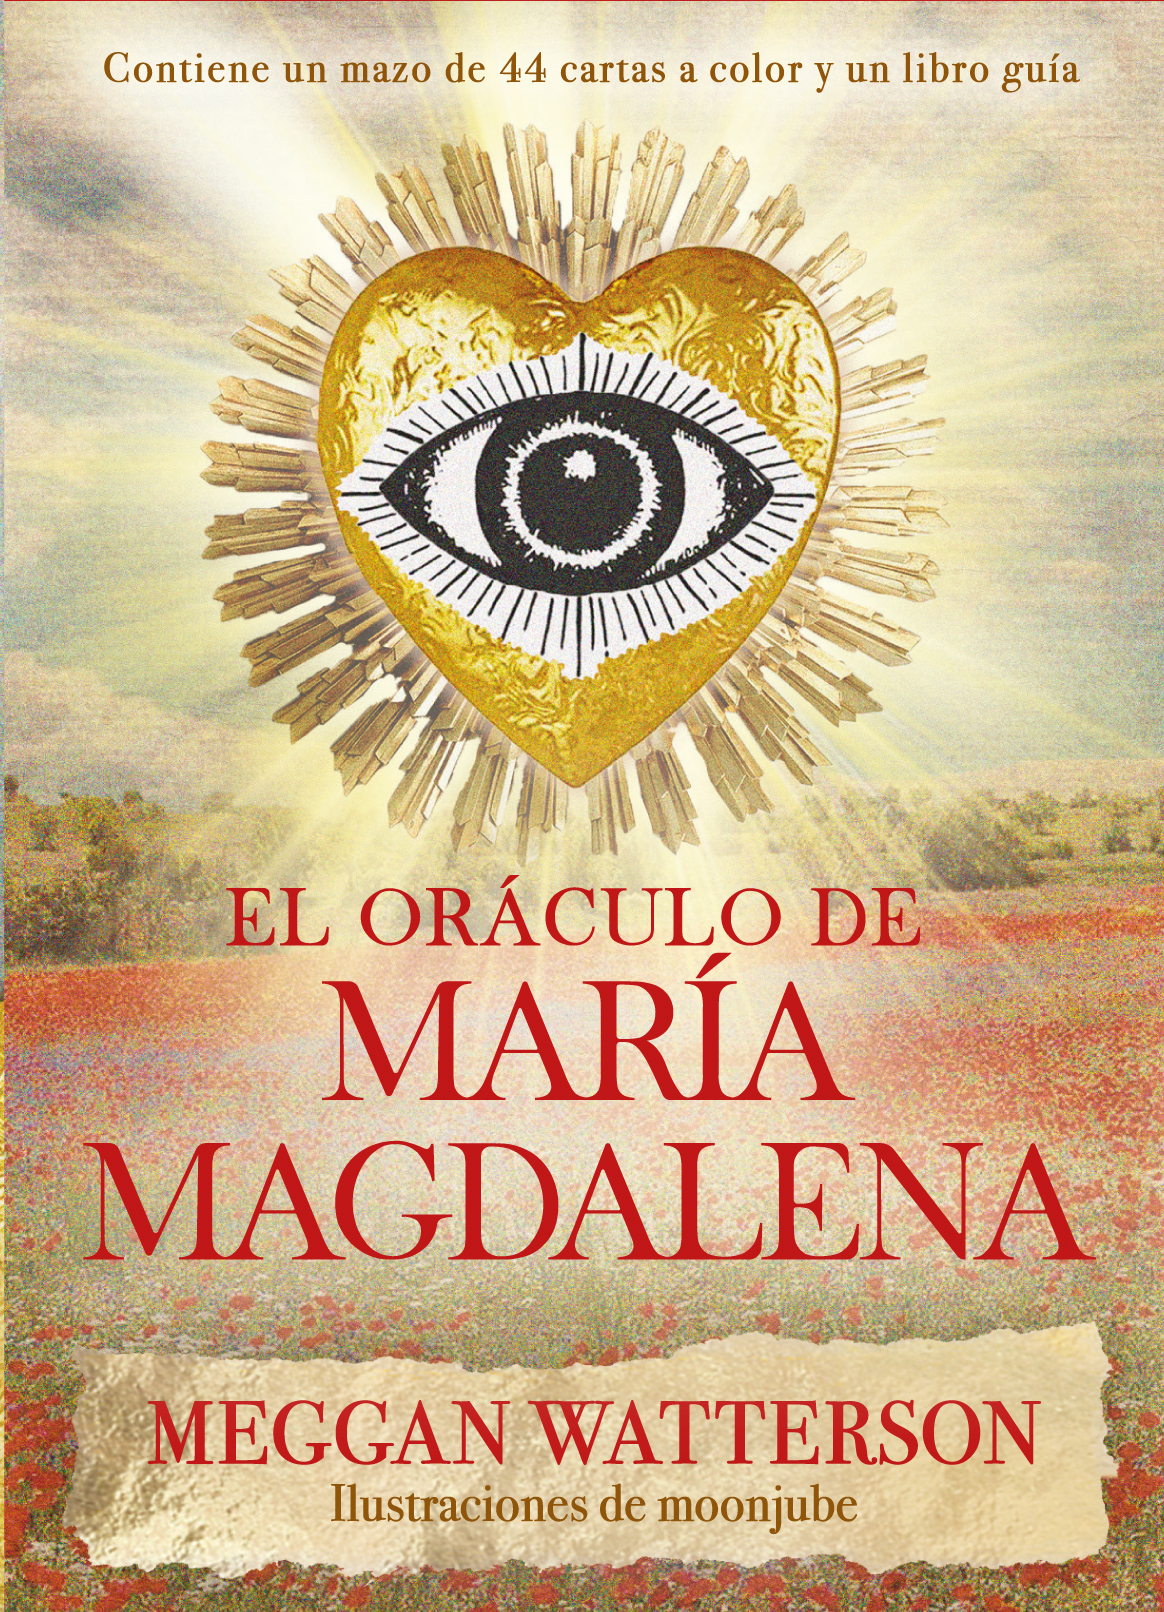 El Oraculo Lenormand de Martina Gabler (Libro y cartas en español)